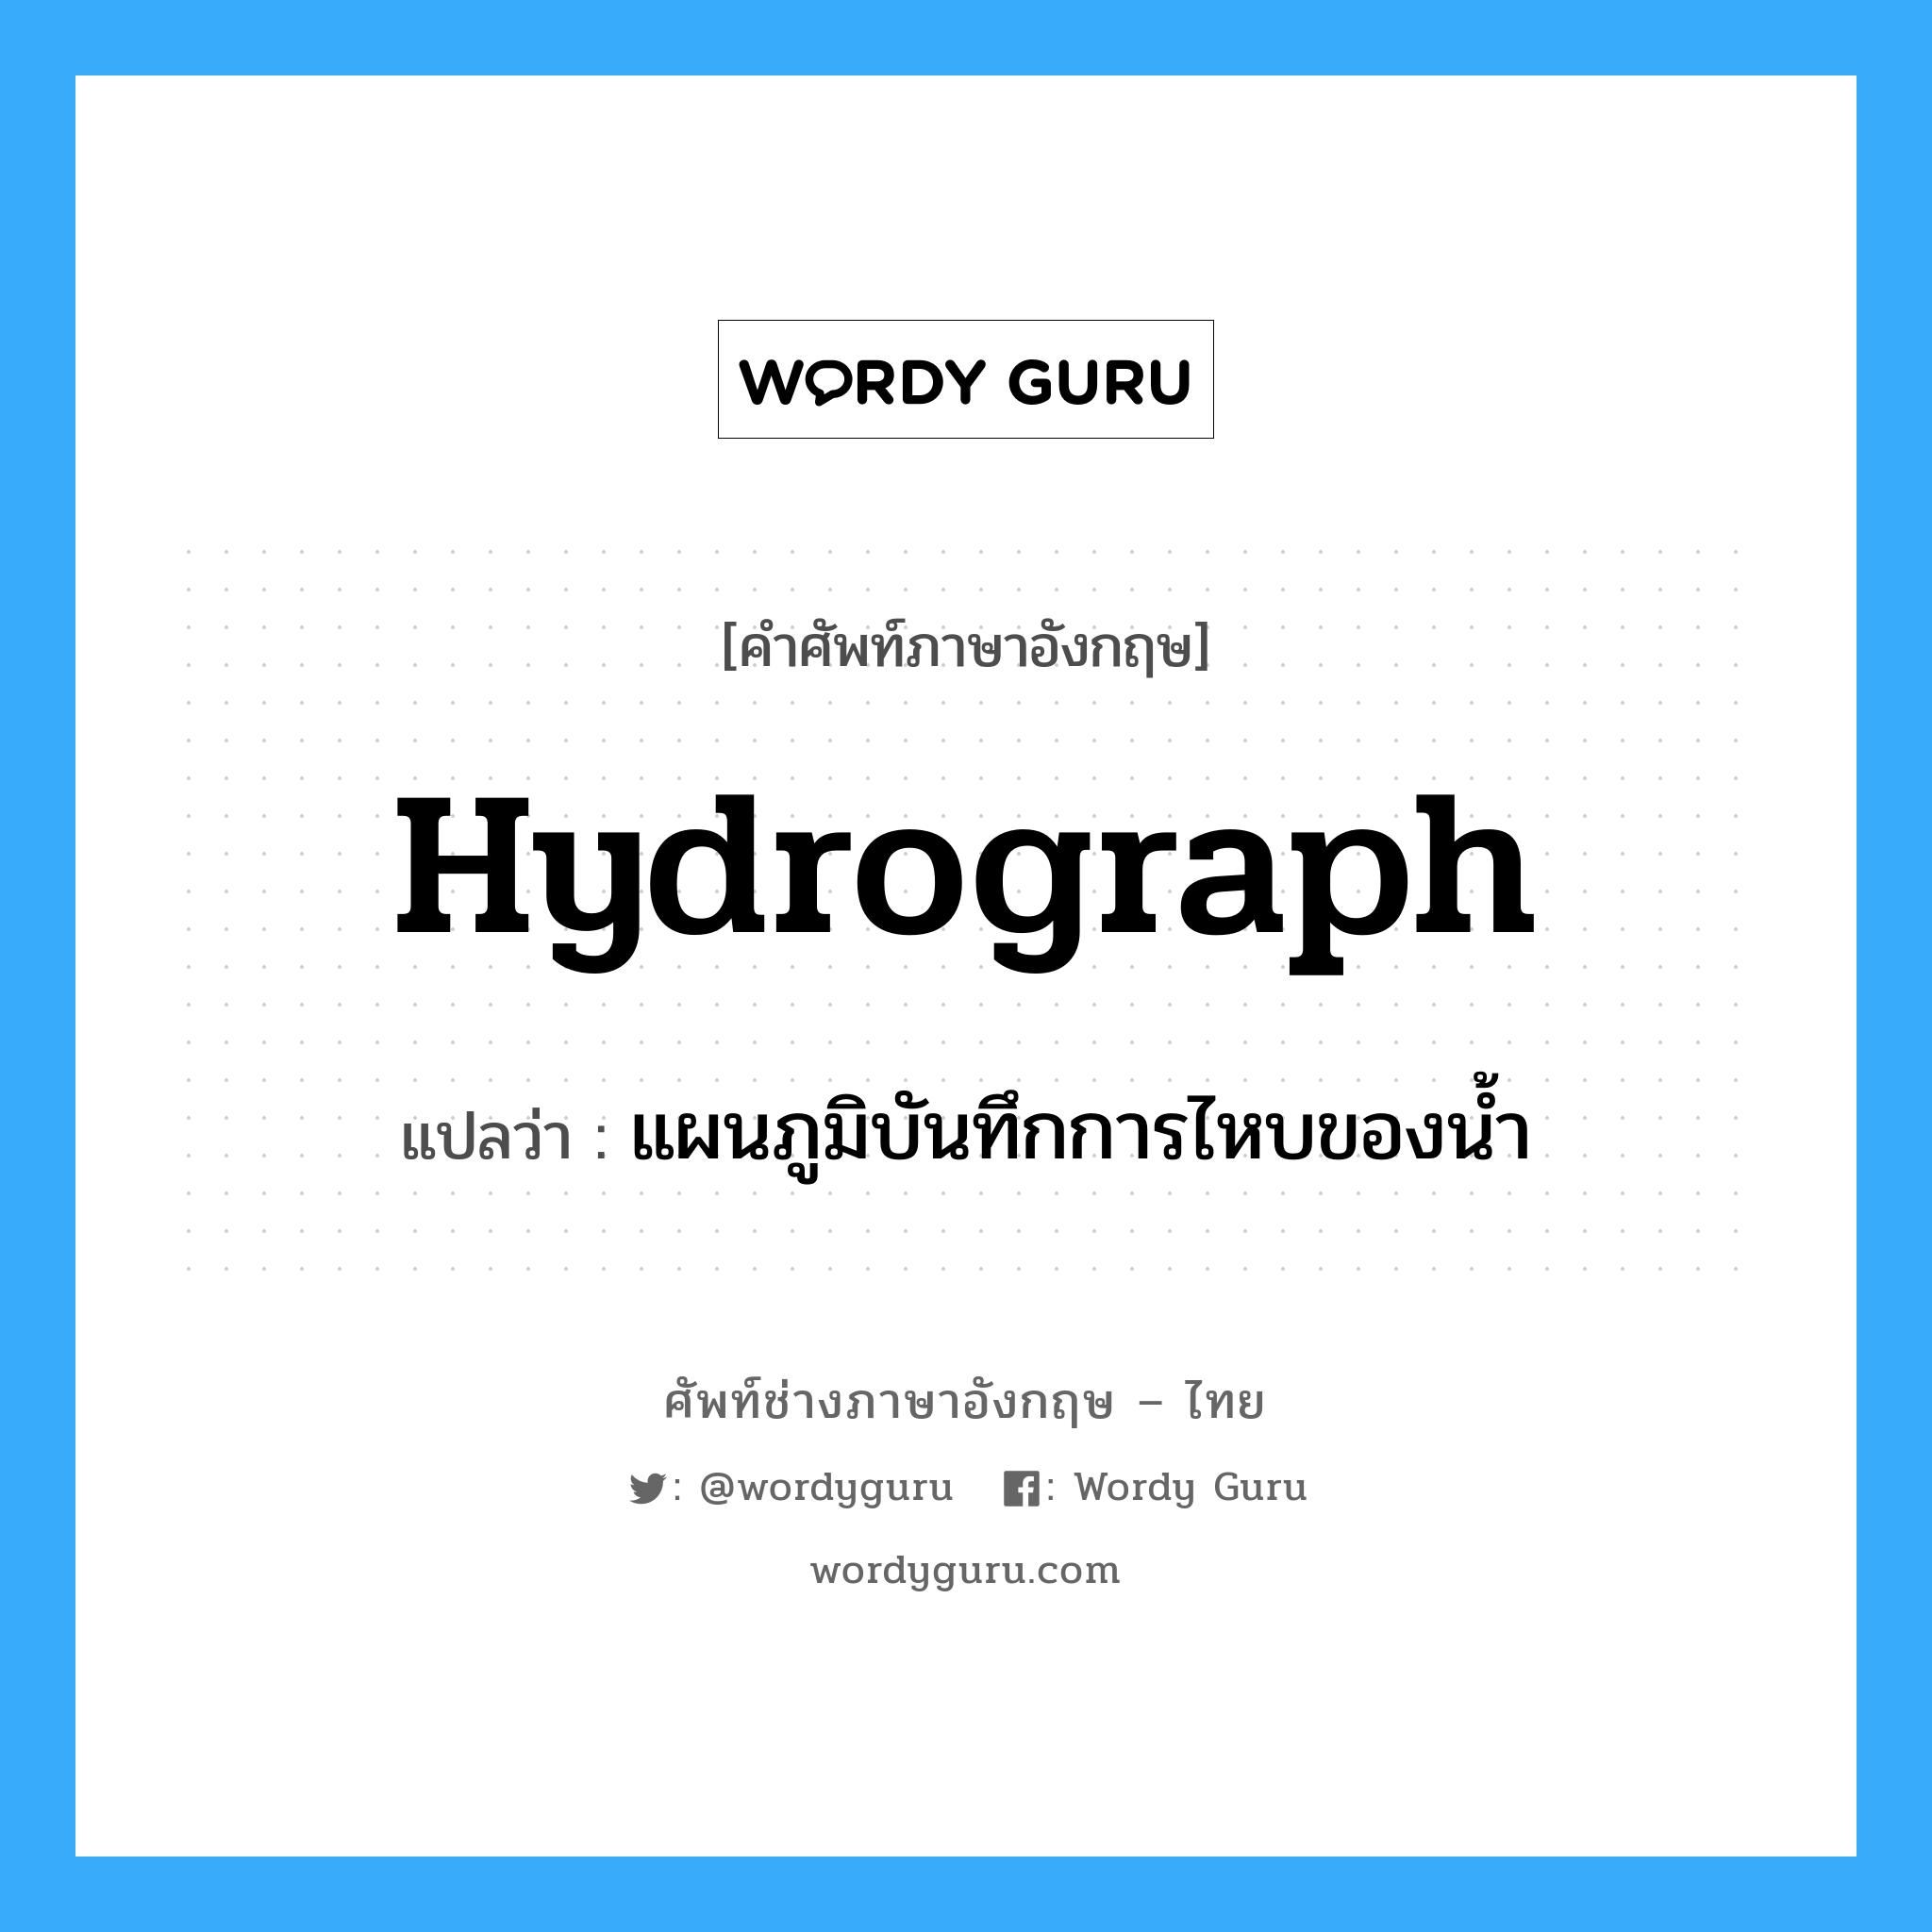 hydrograph แปลว่า?, คำศัพท์ช่างภาษาอังกฤษ - ไทย hydrograph คำศัพท์ภาษาอังกฤษ hydrograph แปลว่า แผนภูมิบันทึกการไหบของน้ำ